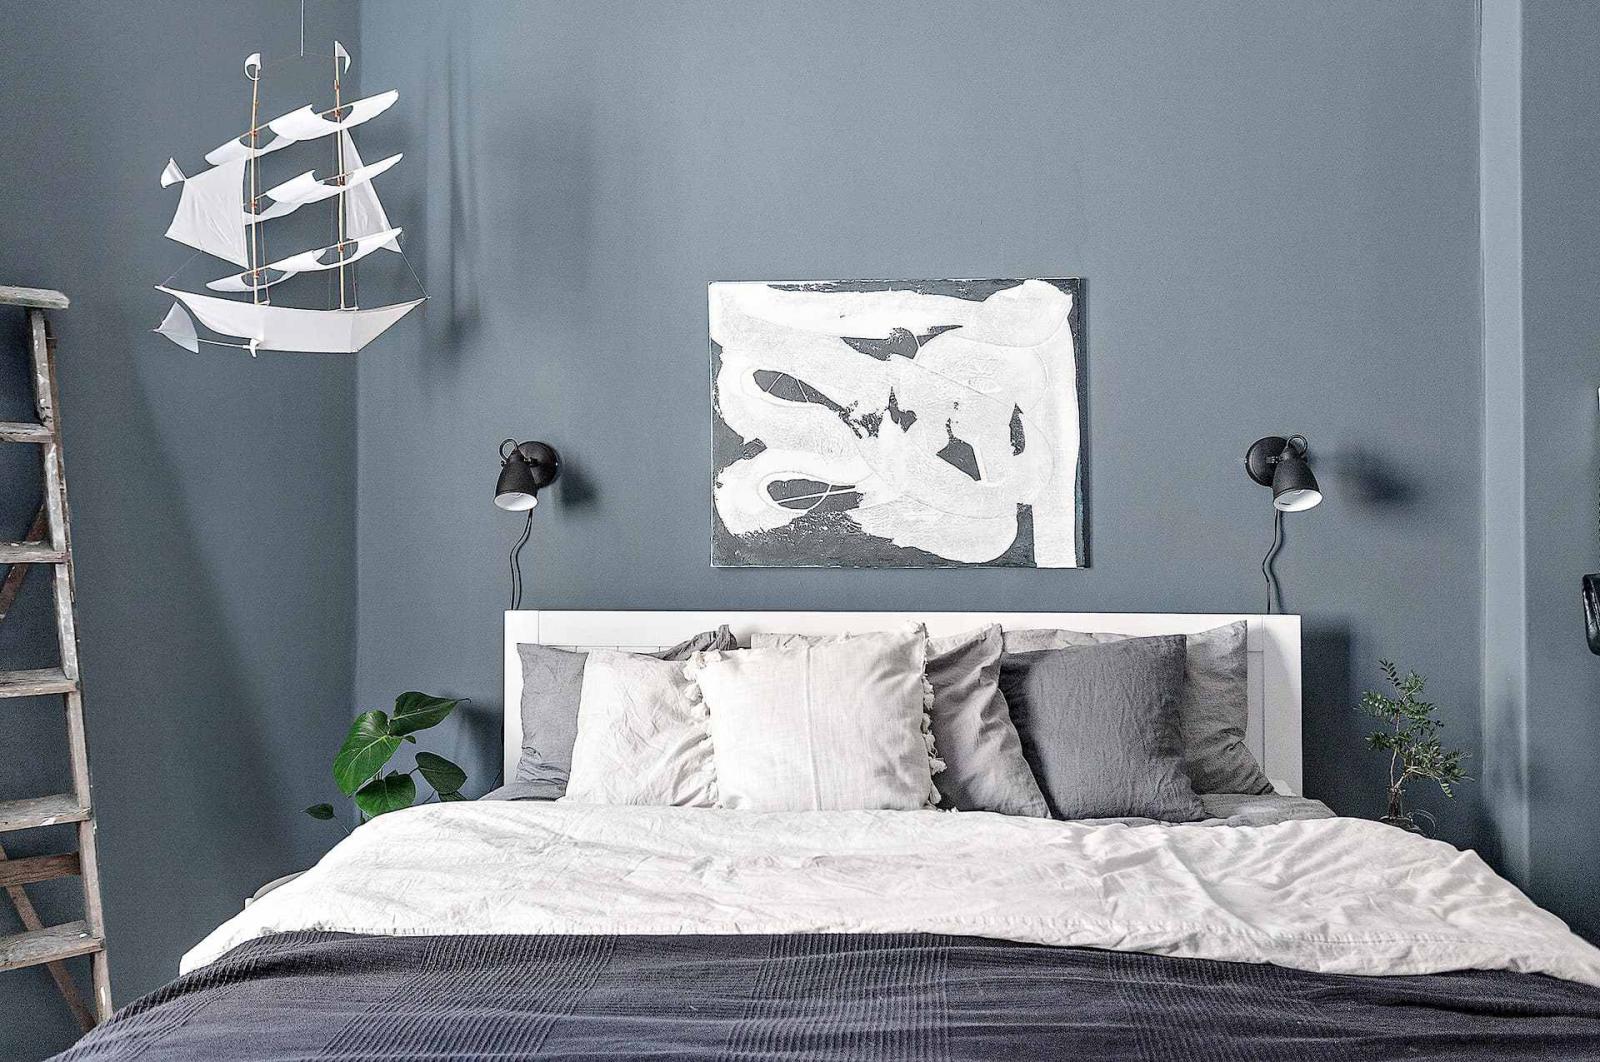 Hình ảnh phòng ngủ với bộ đôi đèn đầu giường, tranh treo nghệ thuật, mô hình thuyền buồm...tường sơn xanh